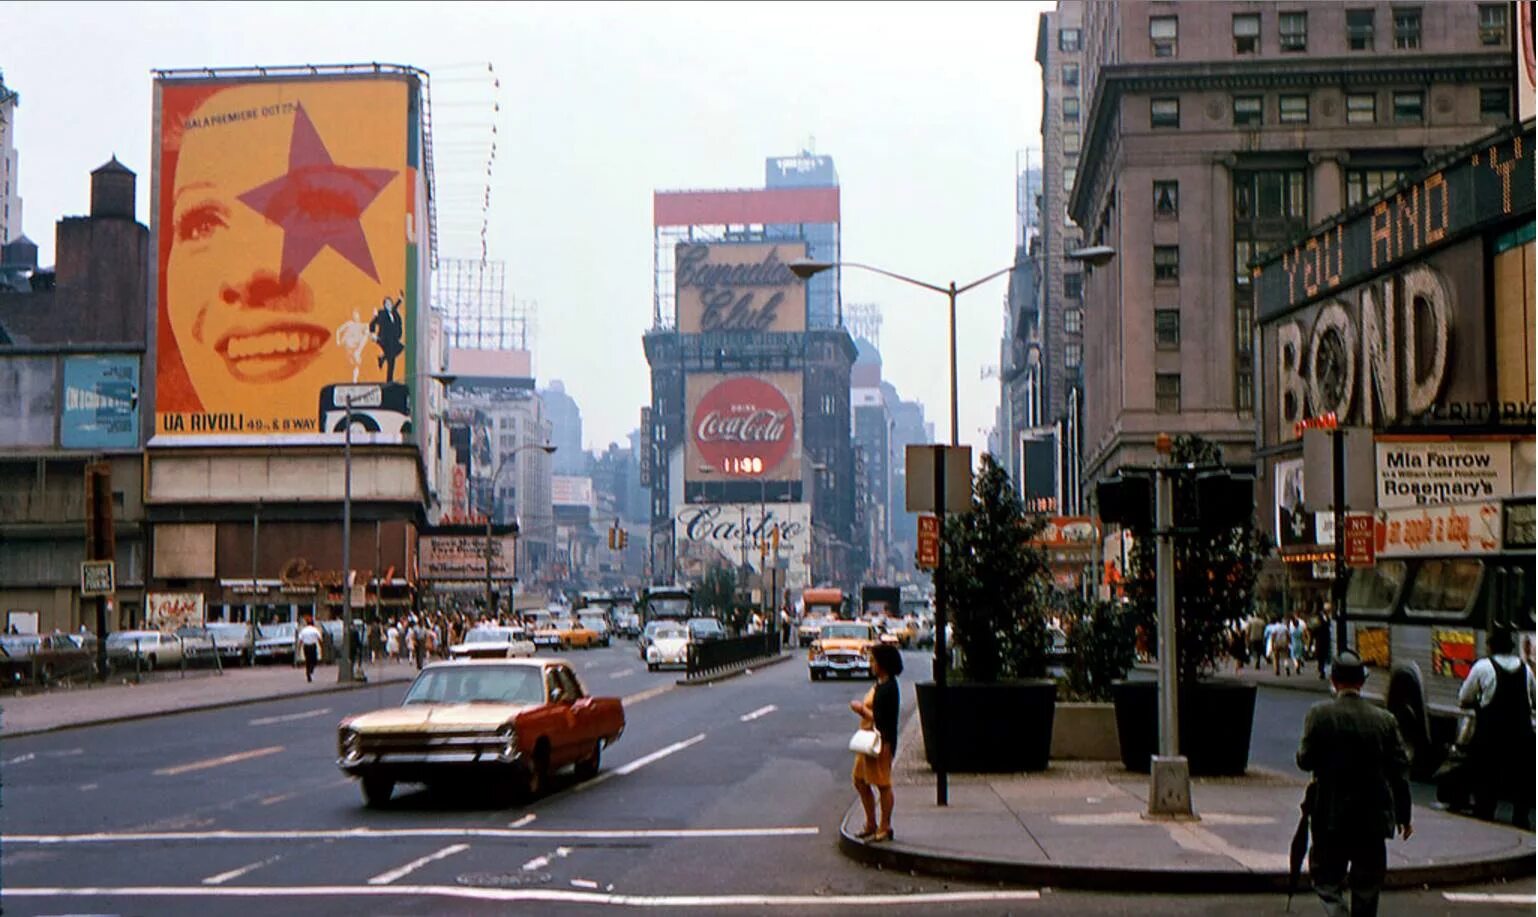 Америка 60 70. Нью Йорк 60е. Америка в 1950-е годы Нью Йорк. Нью-Йорк 60-х годов. Нью-Йорк Бродвей 1960.